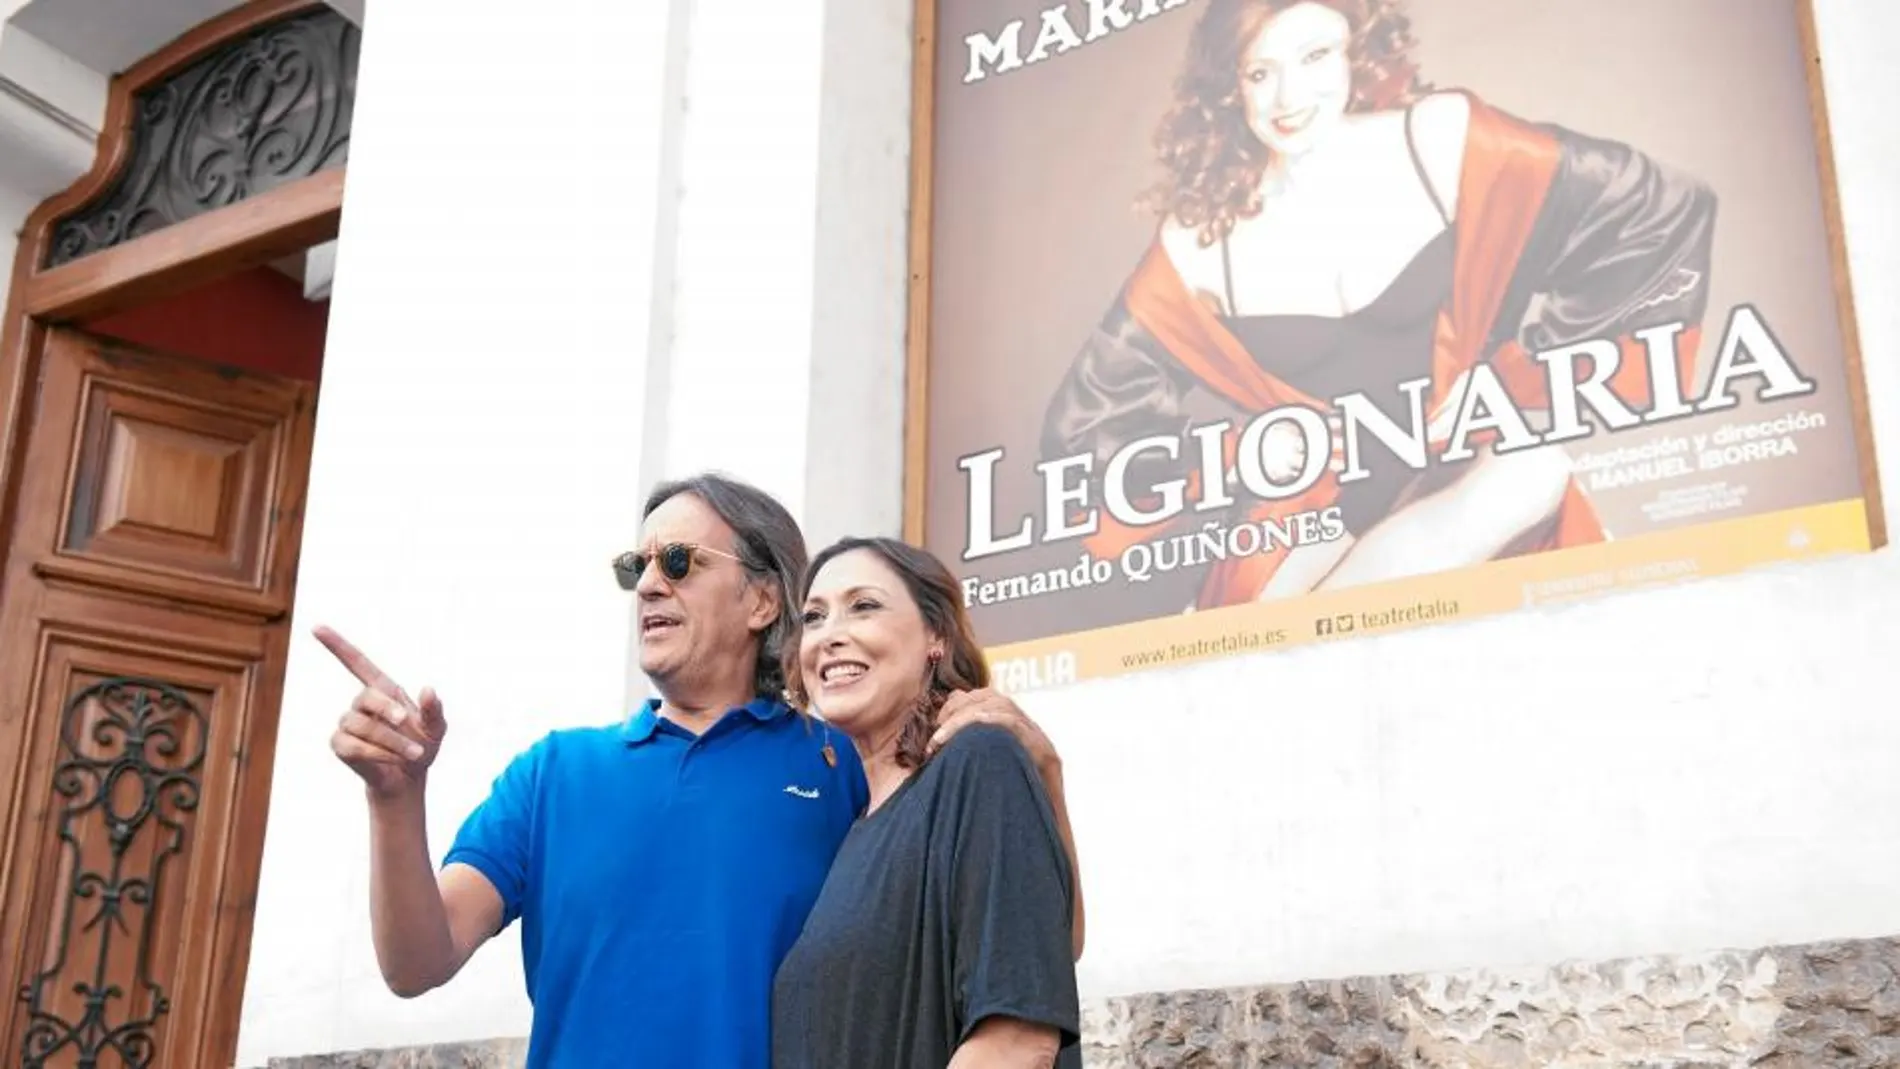 El director alicantino Manuel Iborra y la actriz española María Barranco posan en la entrada del Teatre Talia de Valencia en la presentación de «Legionaria»